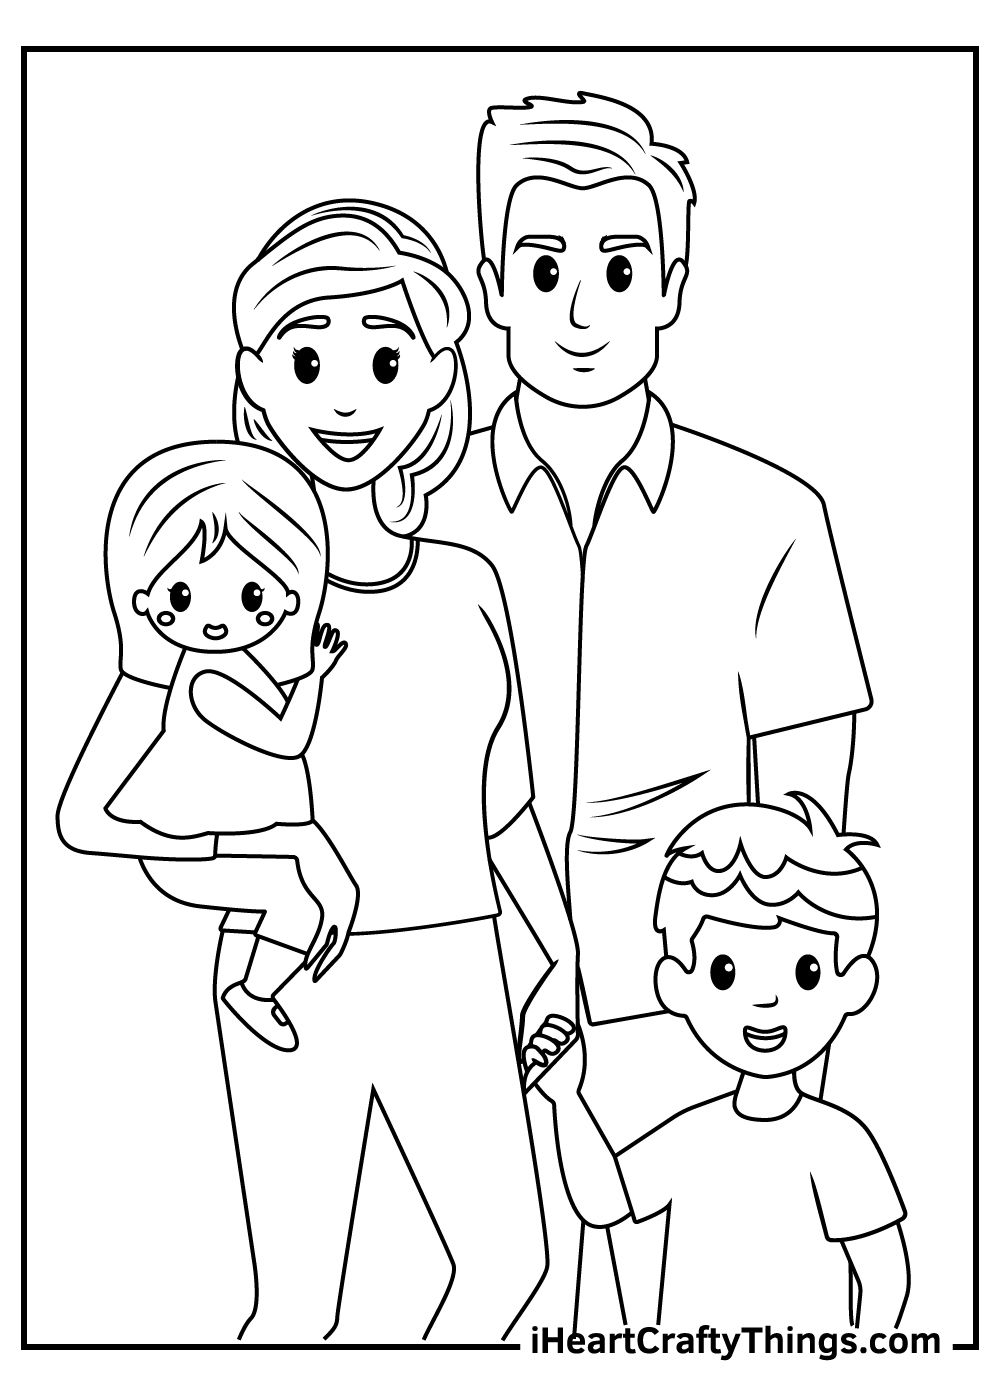 Family coloring pages family coloring pages family coloring family drawing